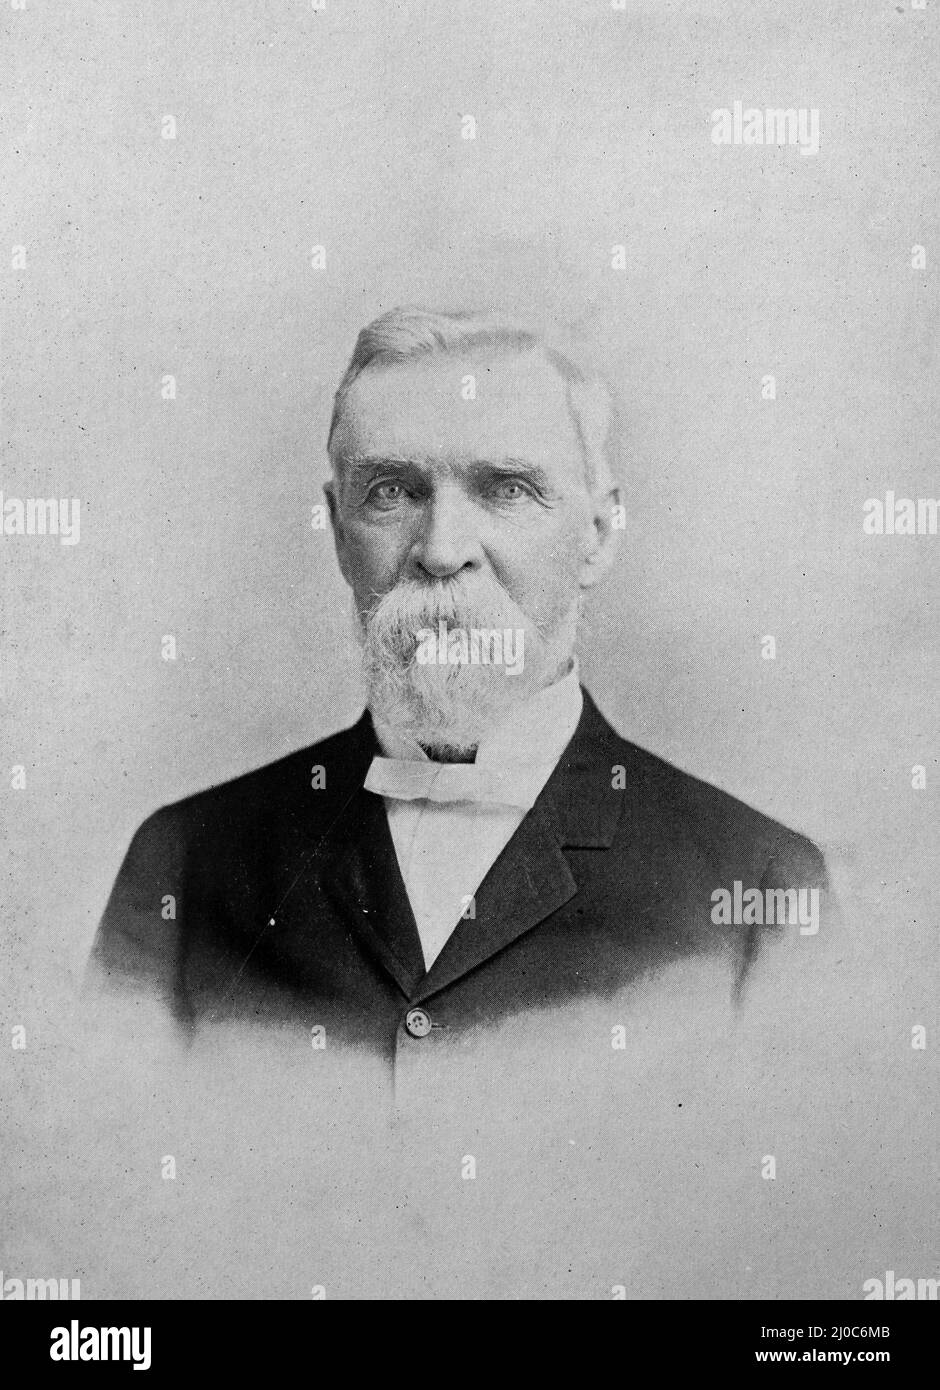 John Fritz, pionero norteamericano de la tecnología del hierro y el acero y Padre de la Industria del Acero de los Estados Unidos; fotografía en blanco y negro tomada alrededor de 1890s Foto de stock